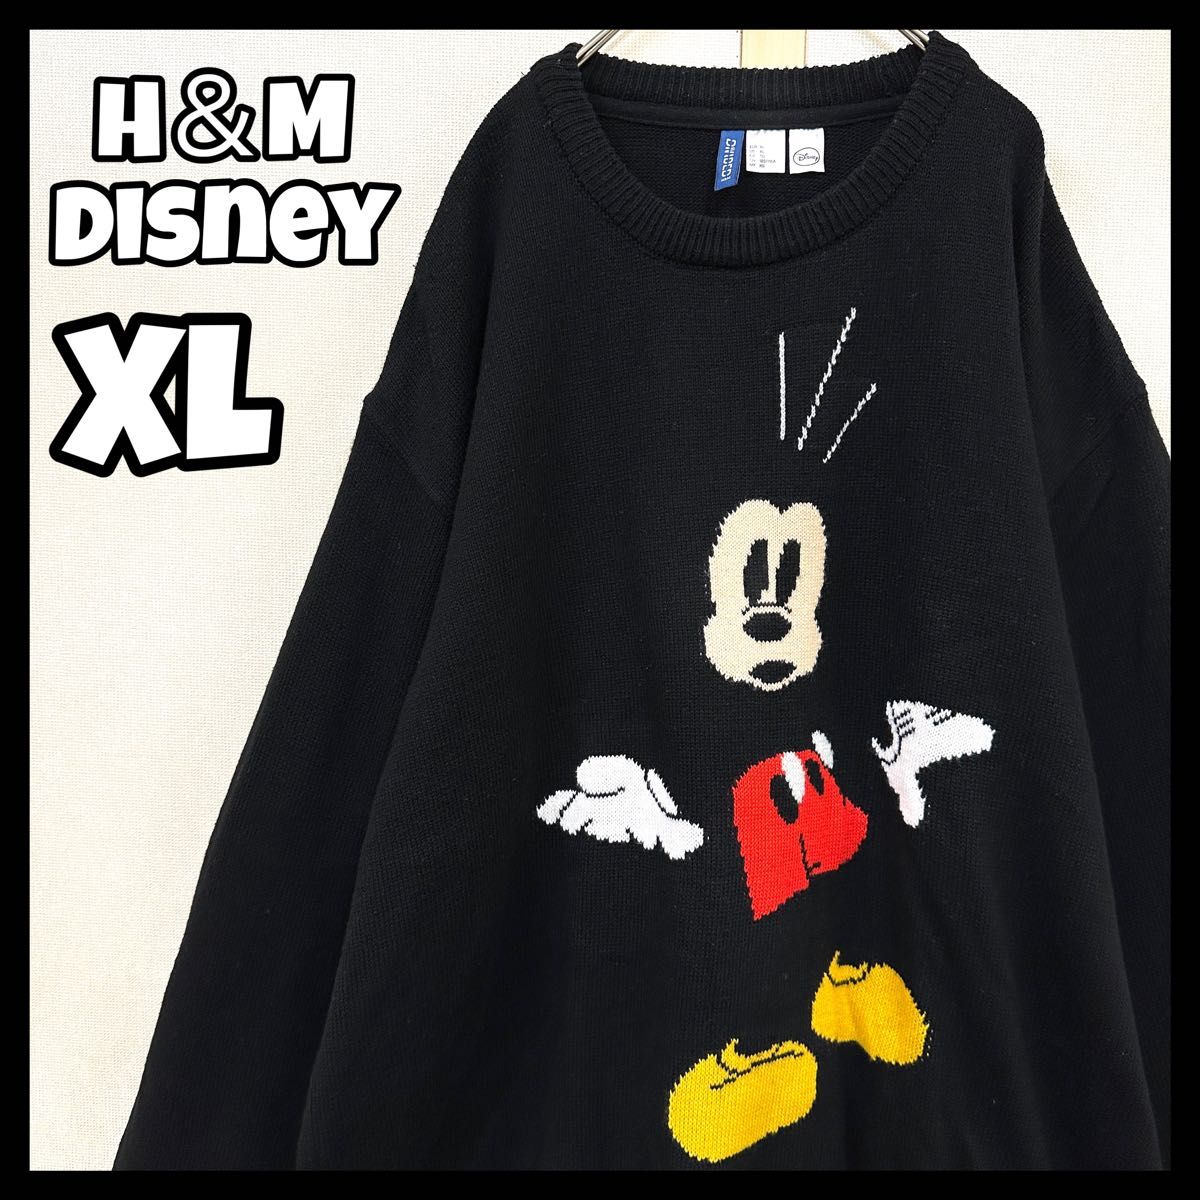 H＆M Disney ミッキーセーター インターシャデザインセーター XL ミッキーマウス ニット アクリル